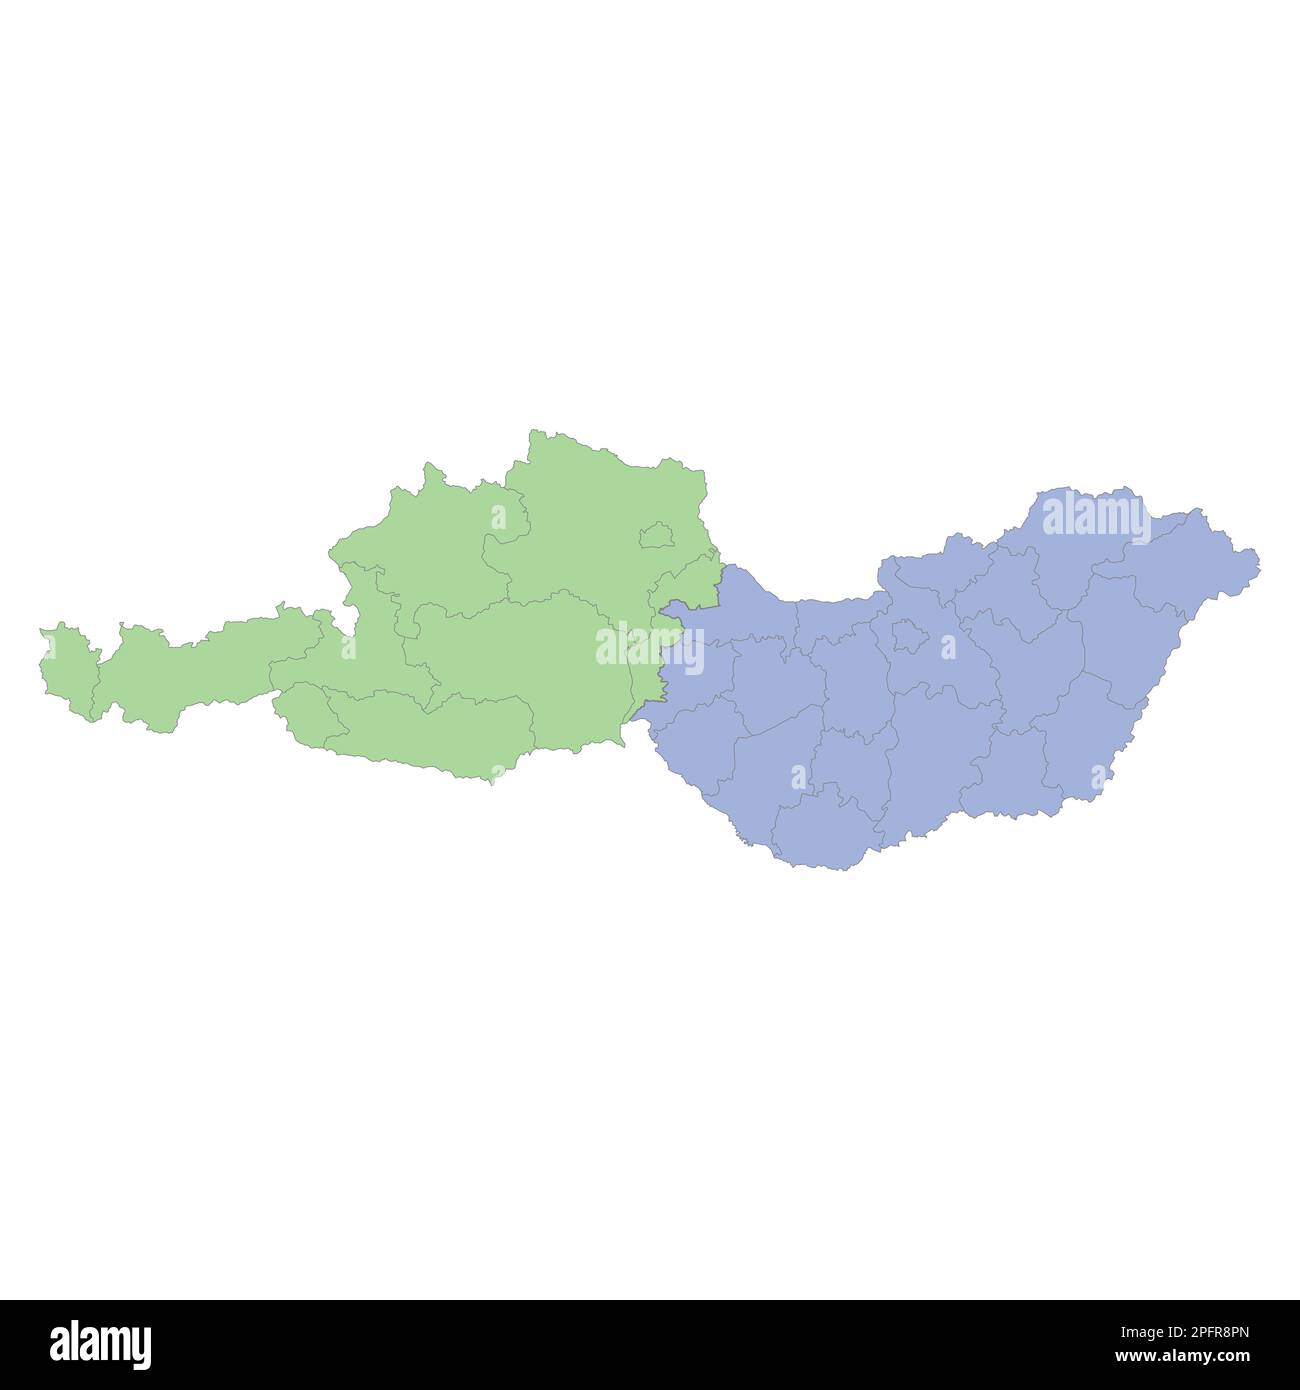 Qualitativ hochwertige politische Landkarte Österreichs und Ungarns mit Grenzen der Regionen oder Provinzen. Vektordarstellung Stock Vektor